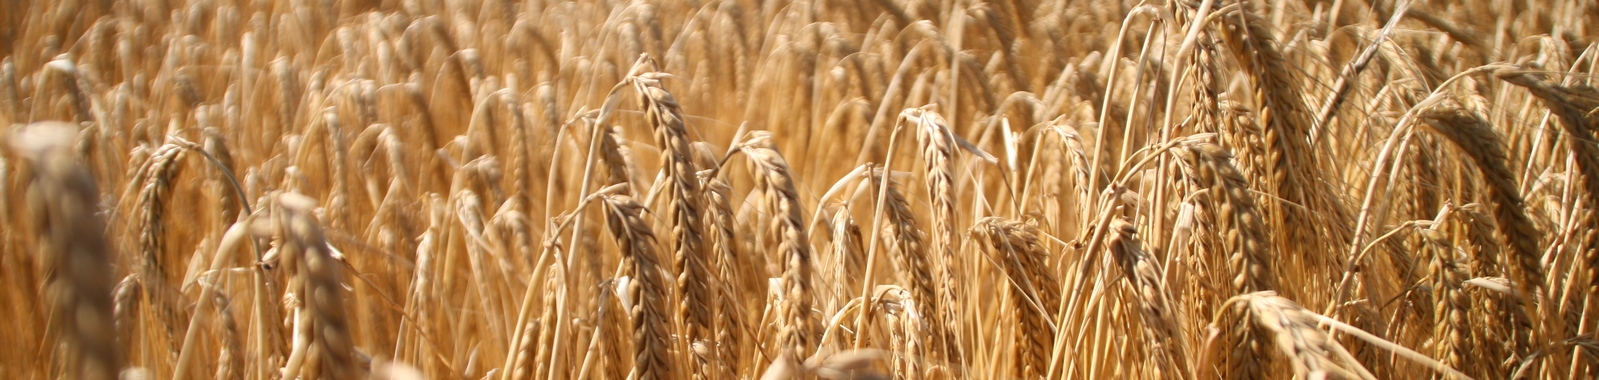 Ripening wheat